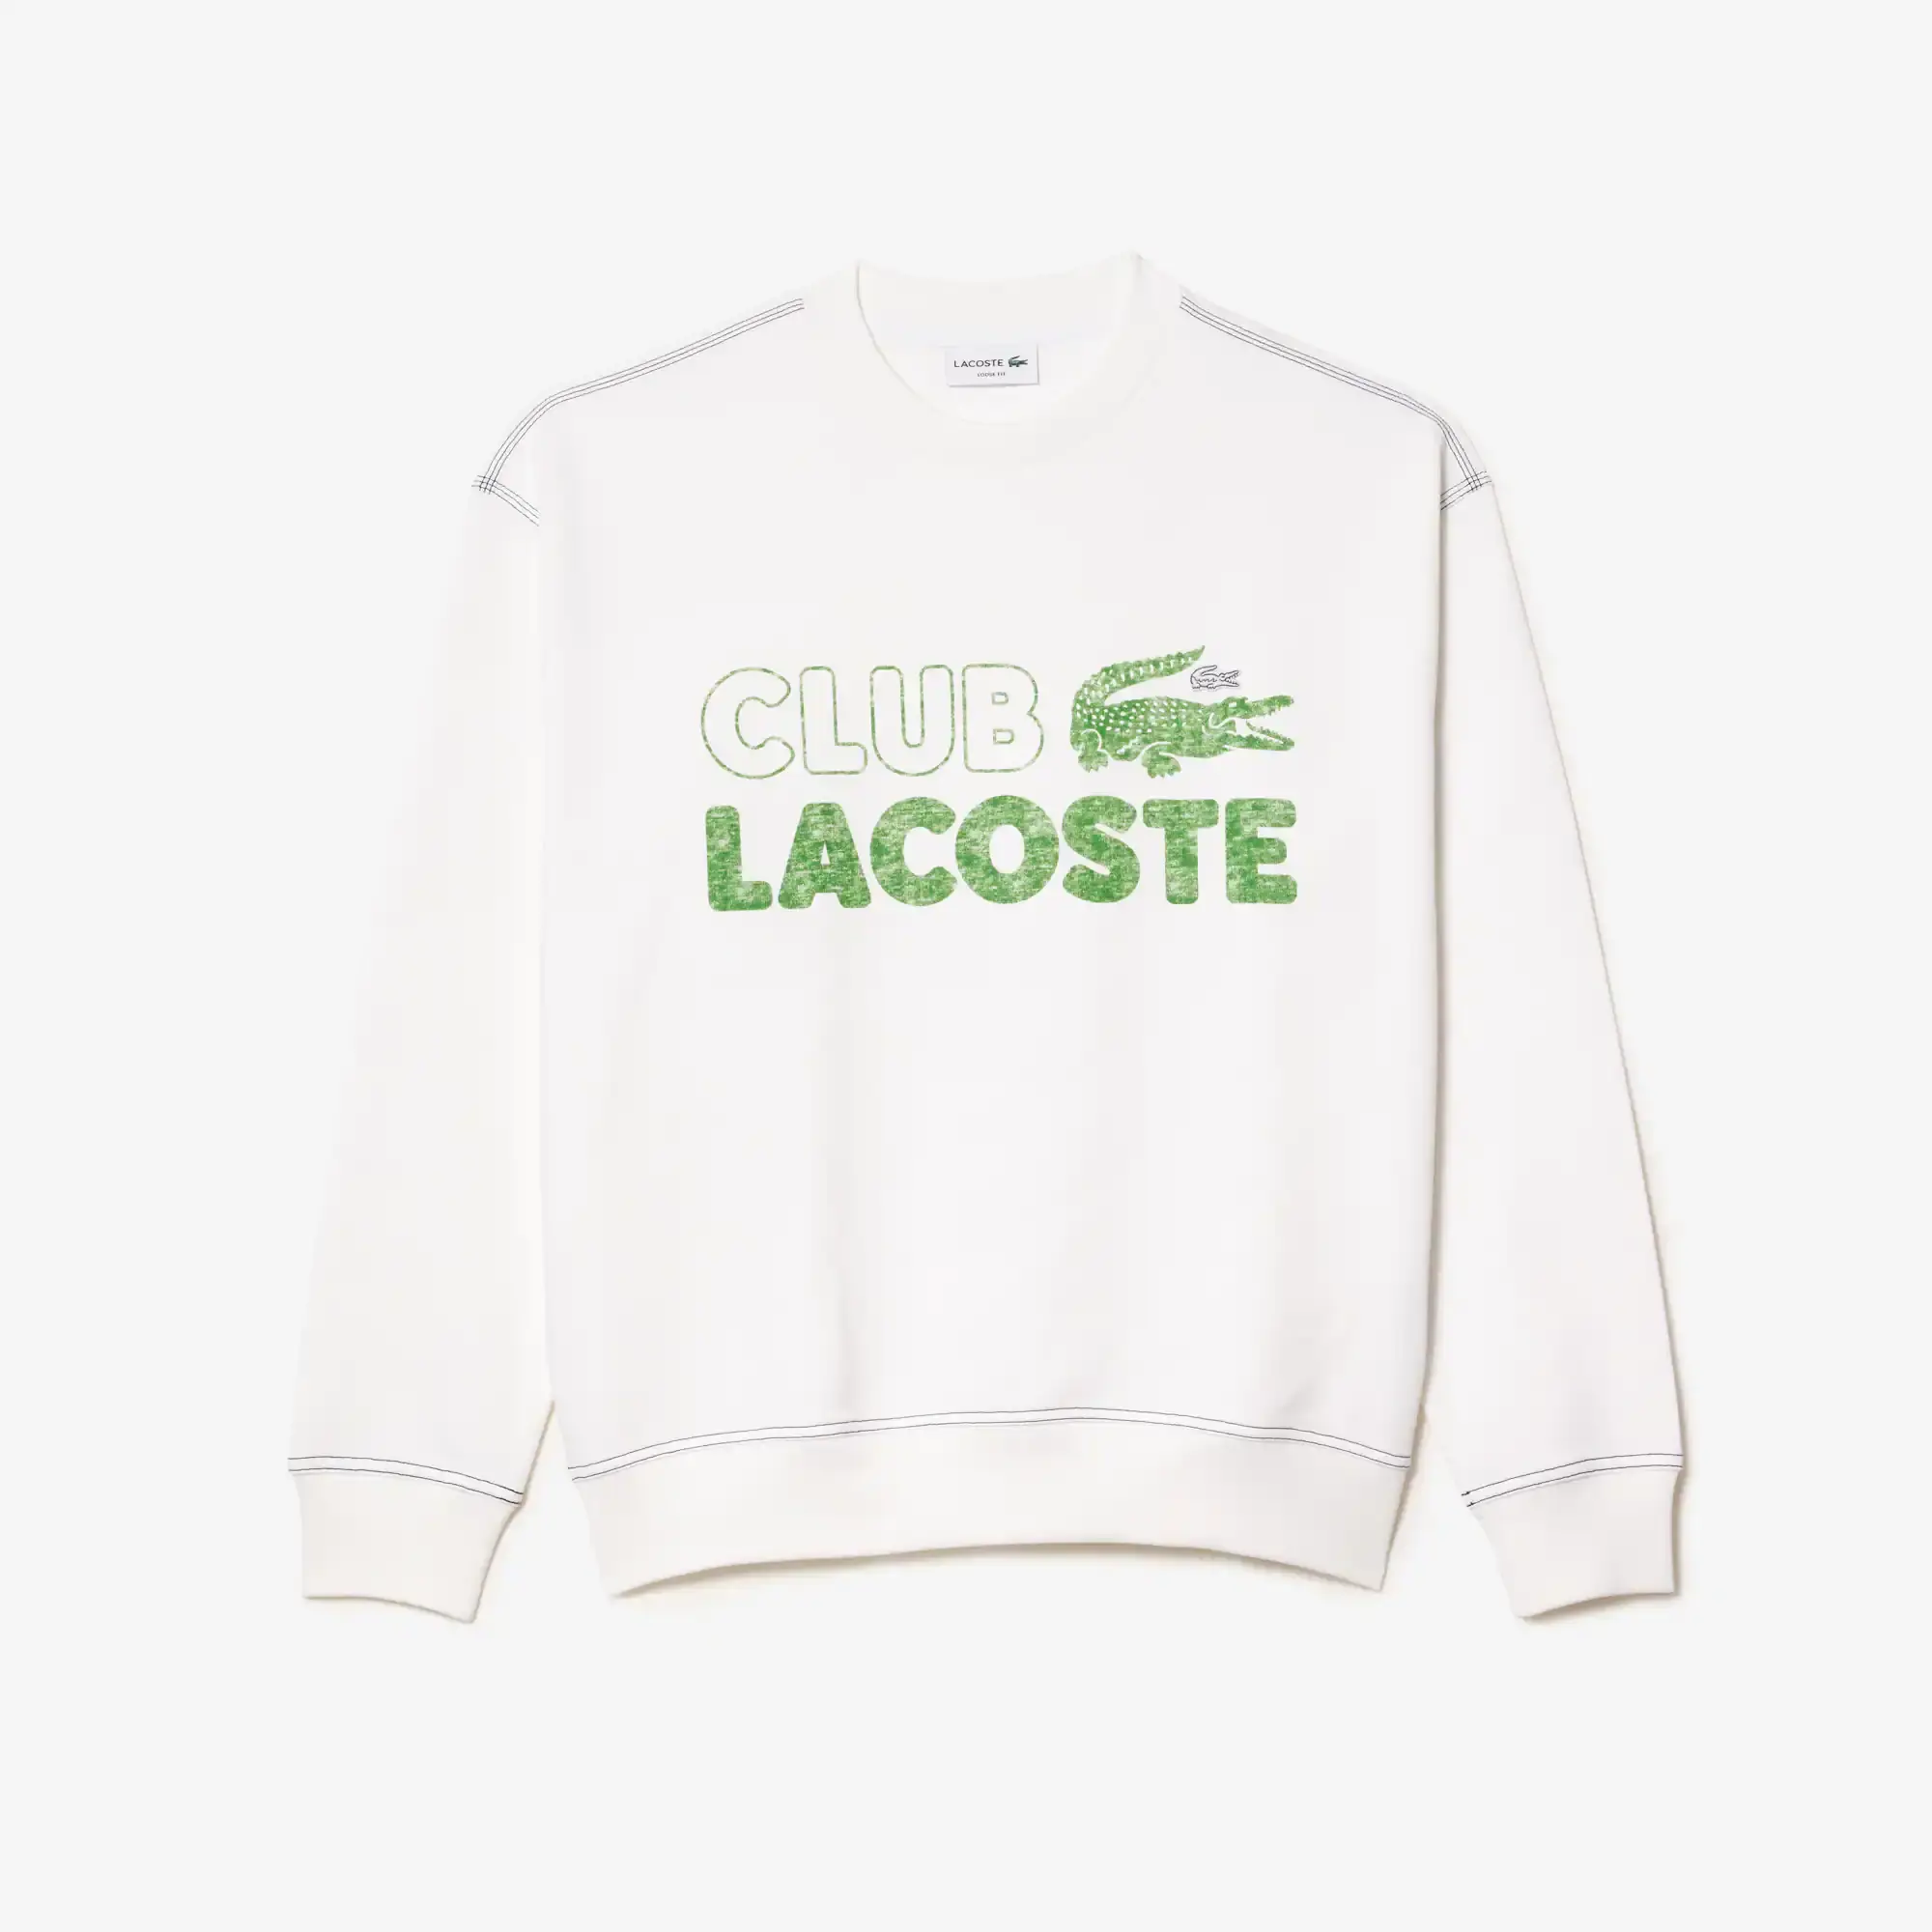 Lacoste Sweatshirt col rond homme Lacoste loose fit imprimé vintage. 2